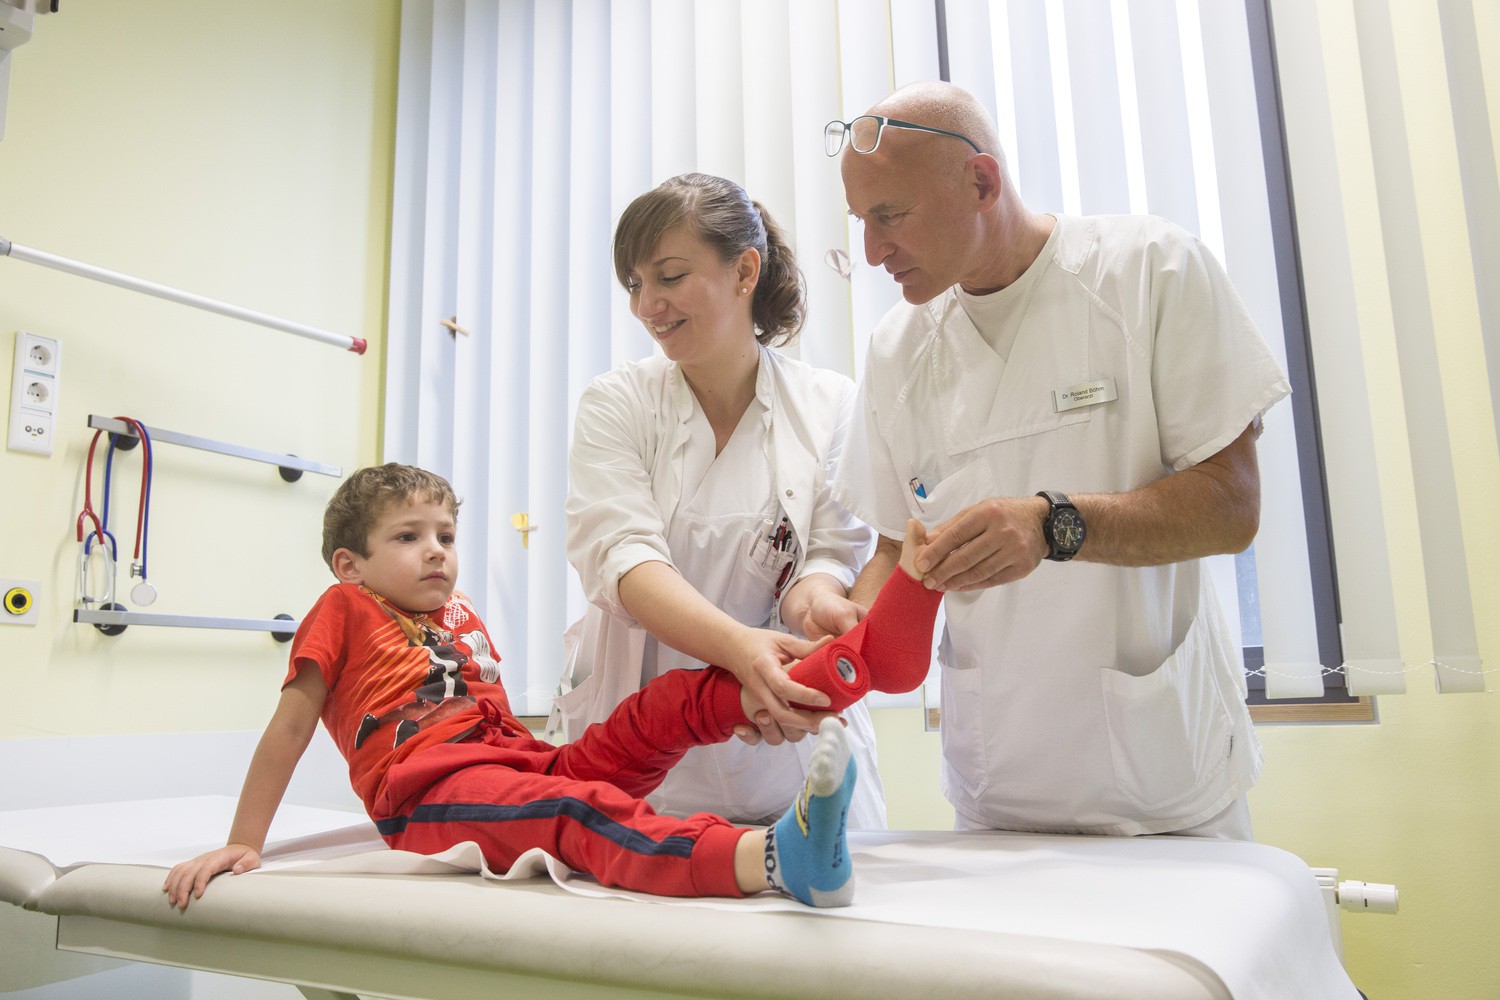 Auch den fünfjährigen Daniel hat es am linken Fuß erwischt. Bei Oberarzt Dr. Roland Böhm und Nicole Geuthel, Ärztin in Weiterbildung, von der Klinik und Poliklinik für Kinderchirurgie am UKL ist er in sehr guter Behandlung.